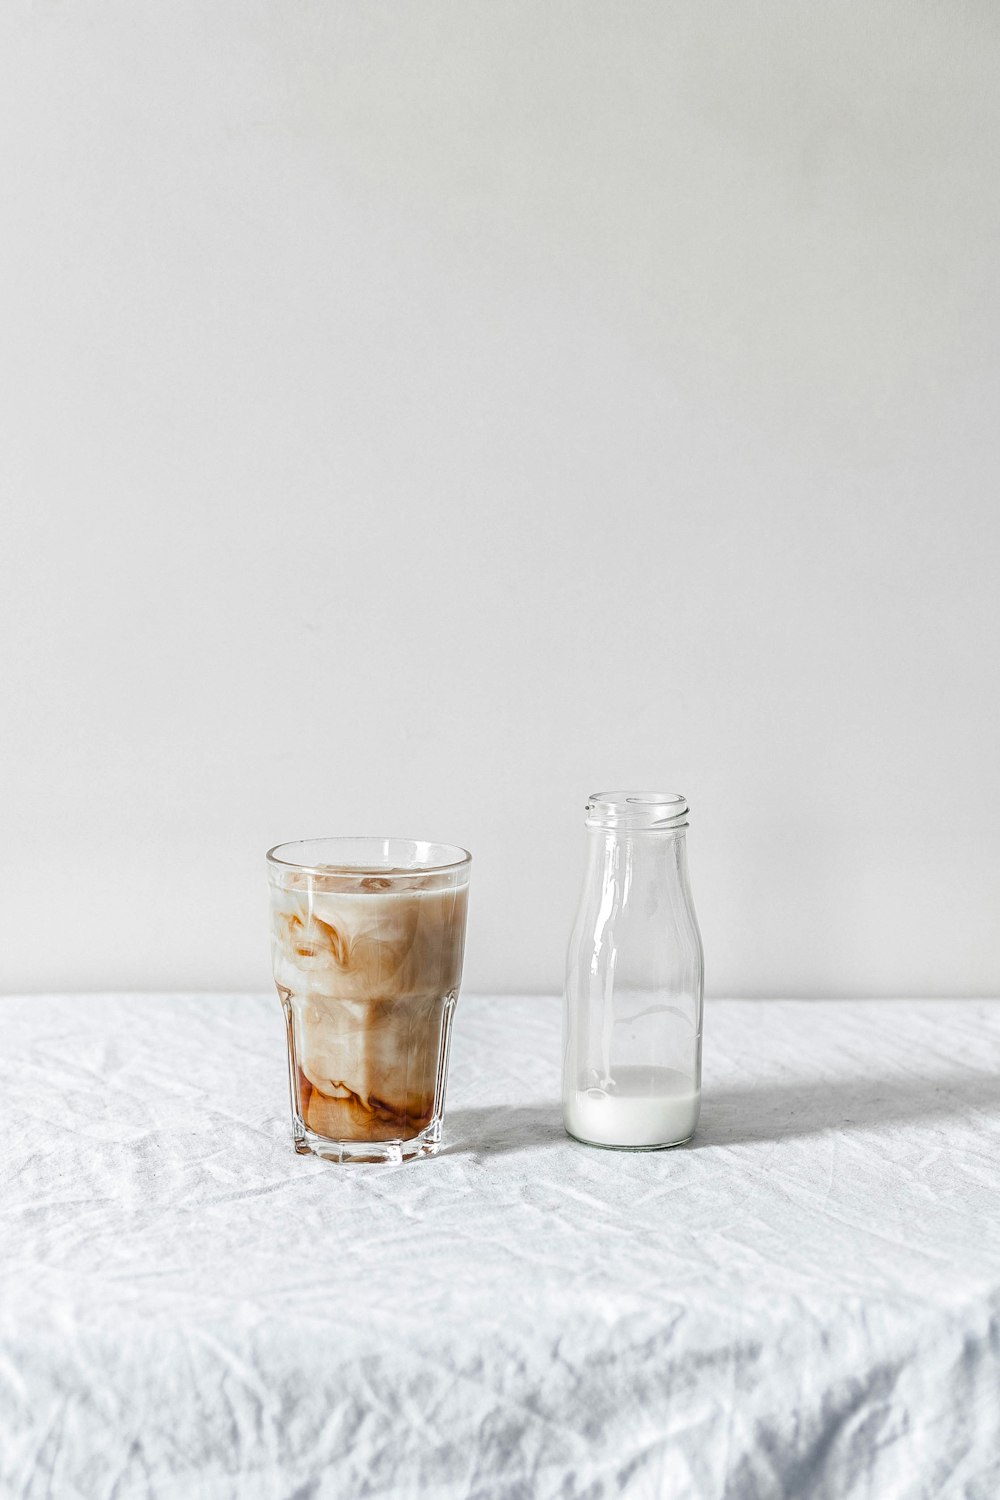 botella de vidrio transparente llena de bebida blanca junto a un vaso de pinta transparente lleno de líquido marrón